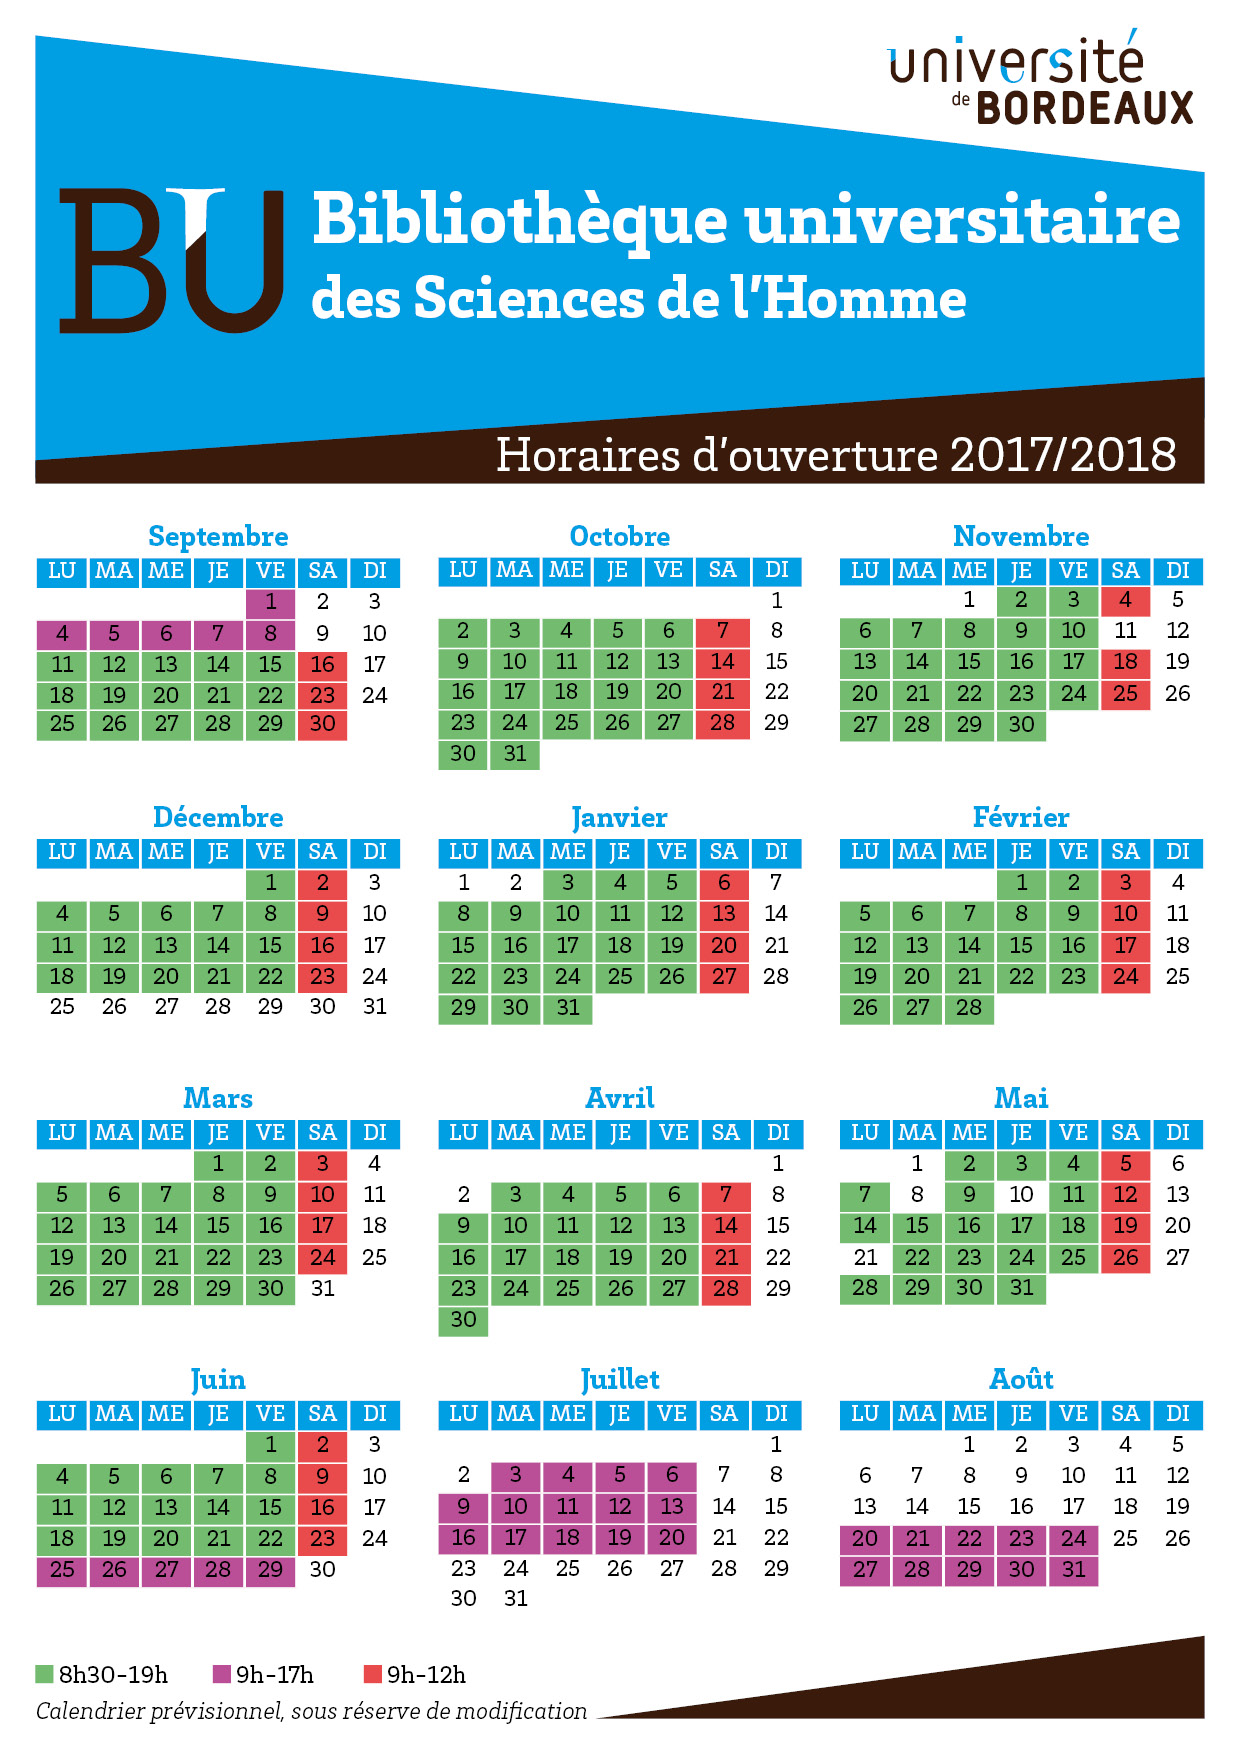 Horaires BUSH 2017-2018 v2